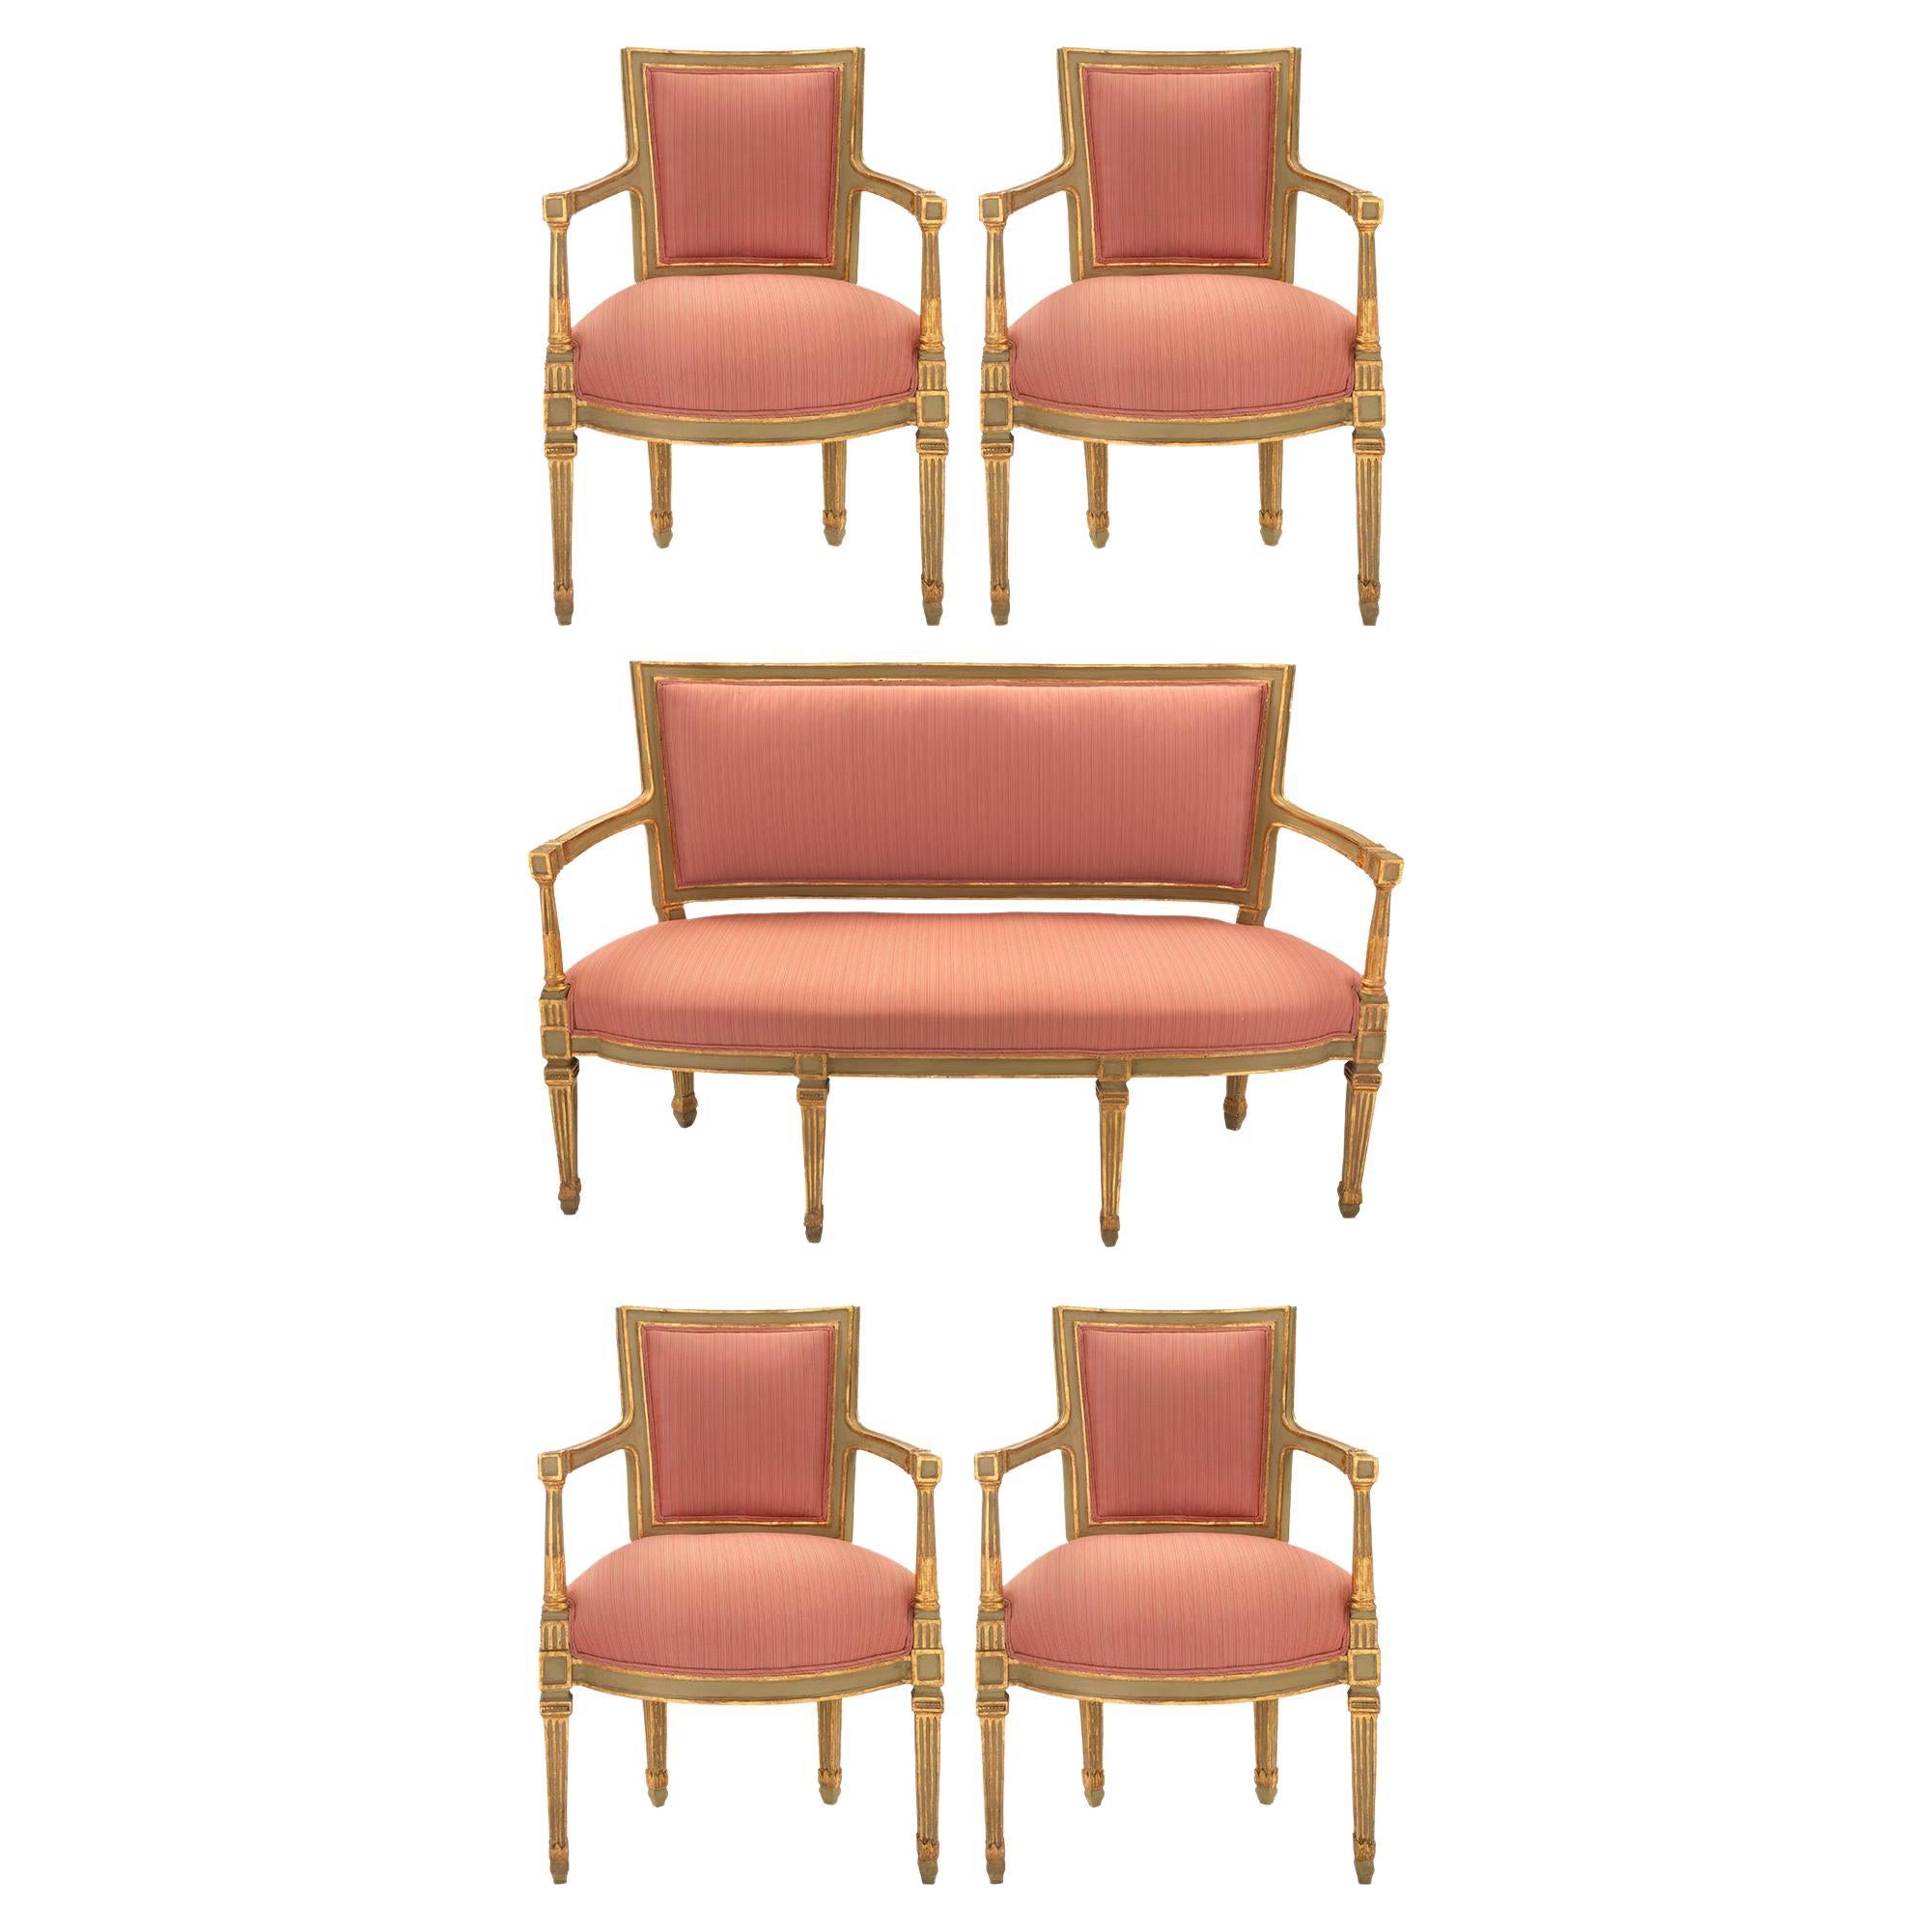 Ensemble de fauteuils italiens d'époque Louis XVI du 18ème siècle